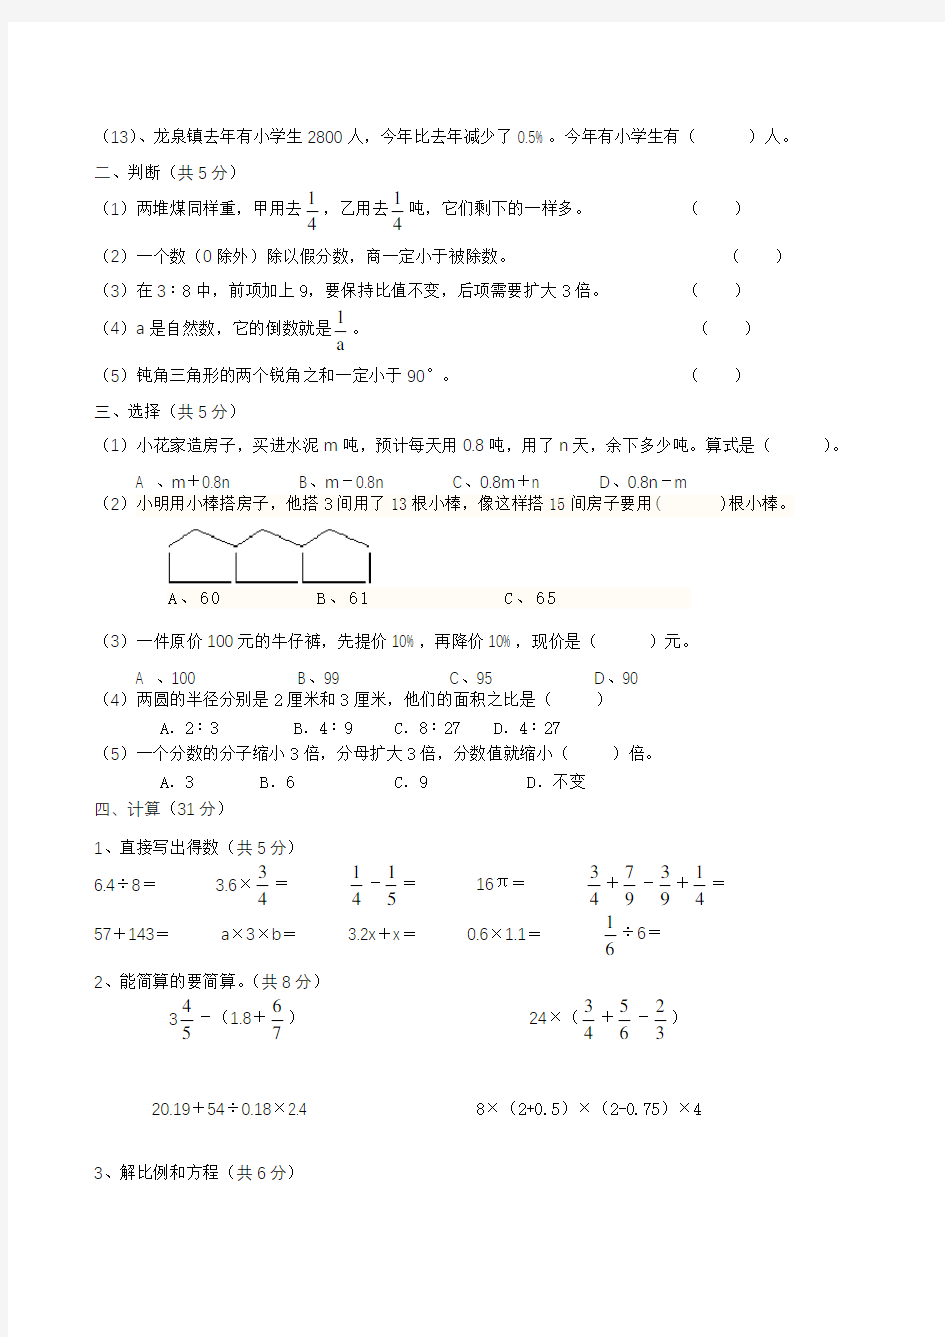 【人教版】小升初数学考试试题(含答案)